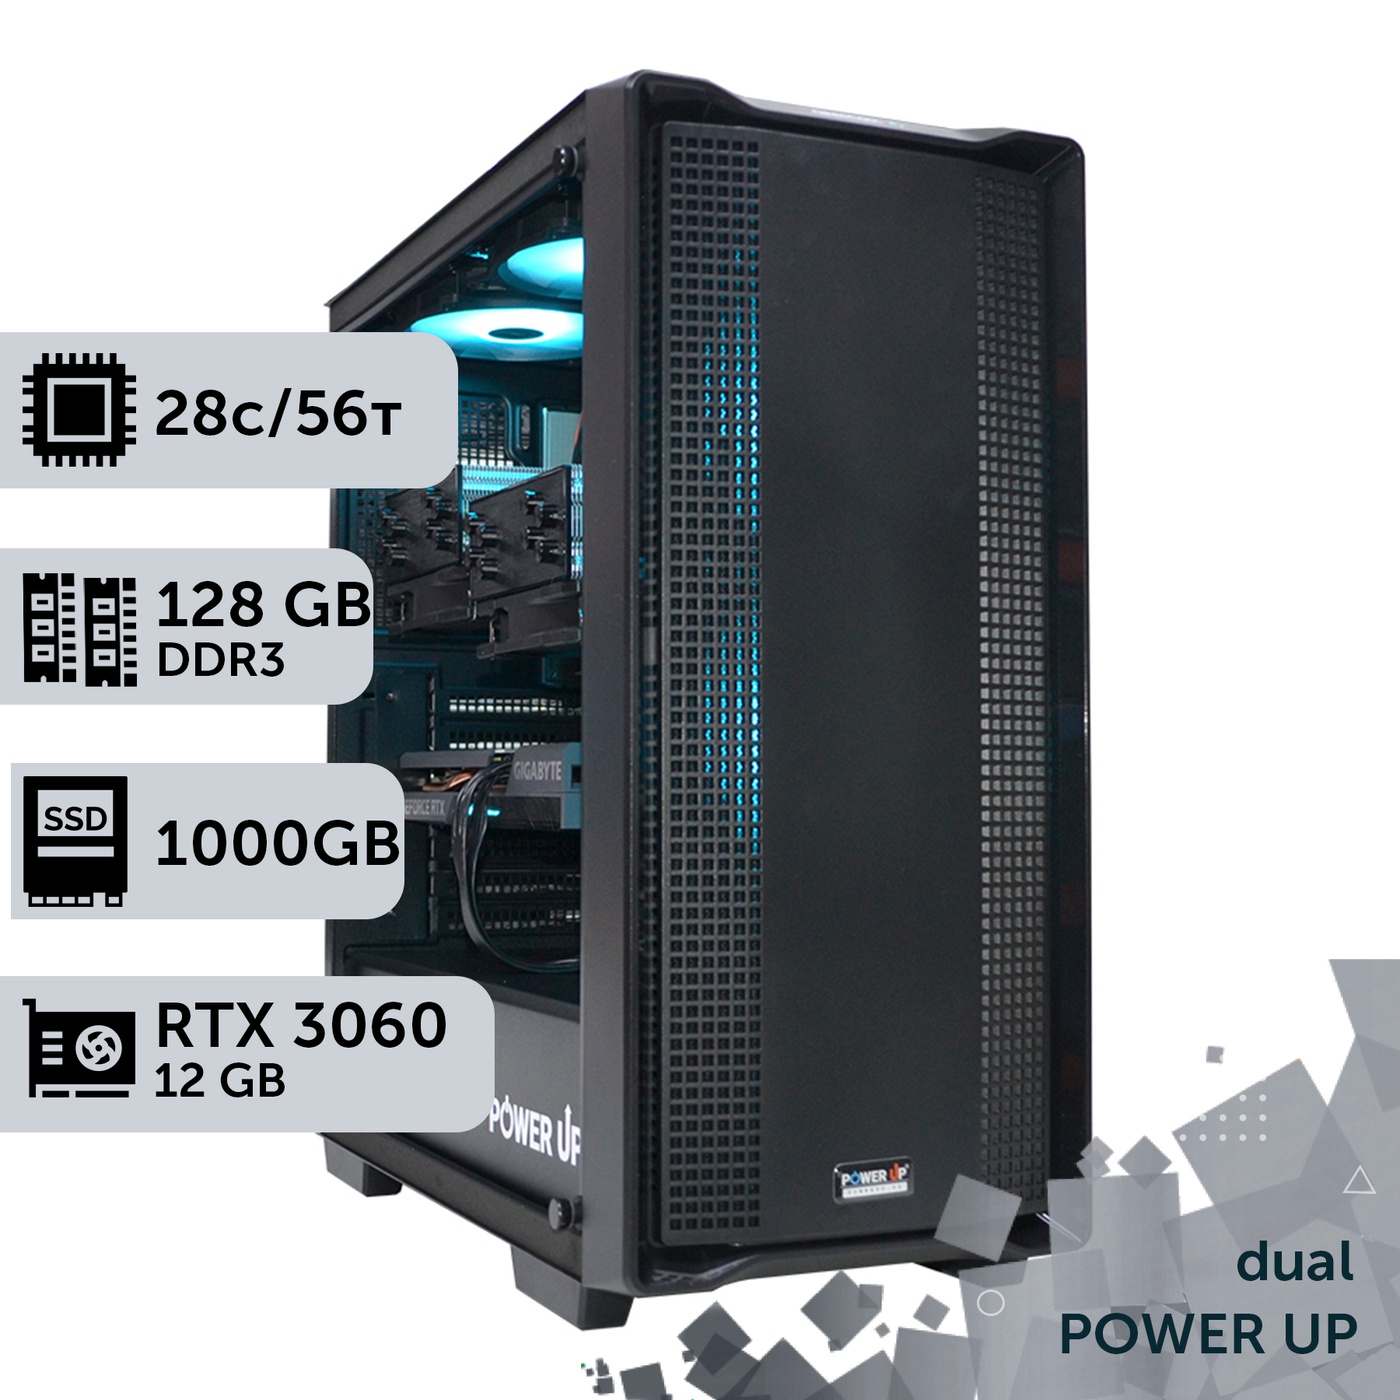 Двухпроцессорная рабочая станция PowerUp #344 Xeon E5 2680 v4 x2/128 GB/SSD 1TB/GeForce RTX 3060 12GB